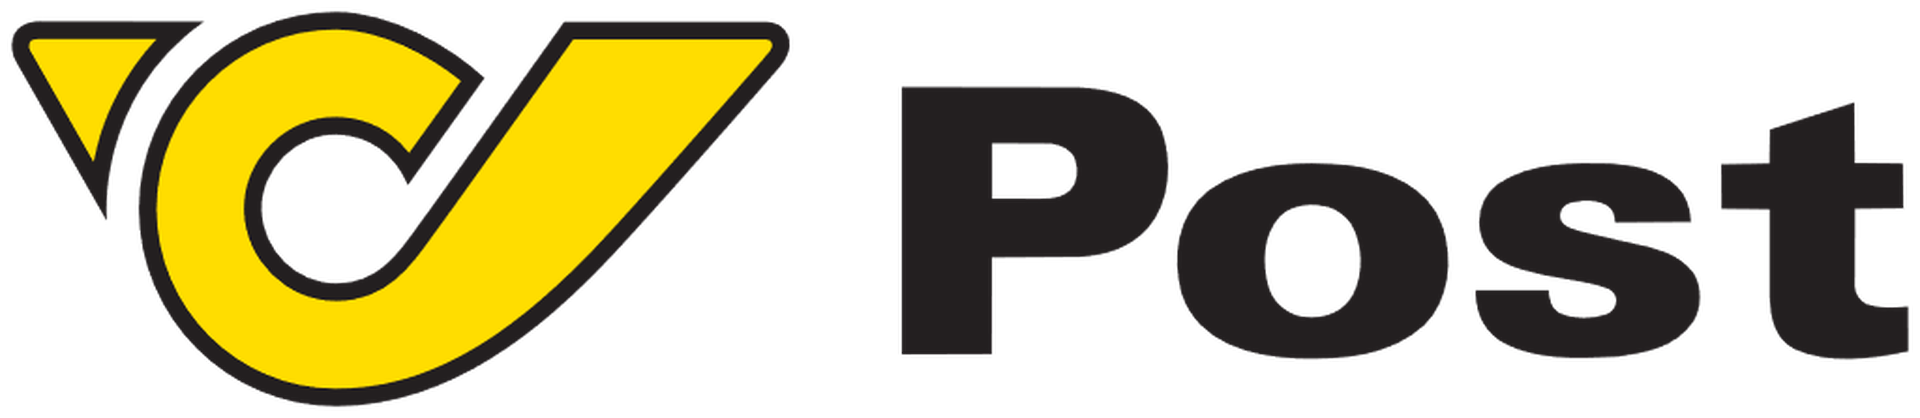 Österreichische_Post_logo.png